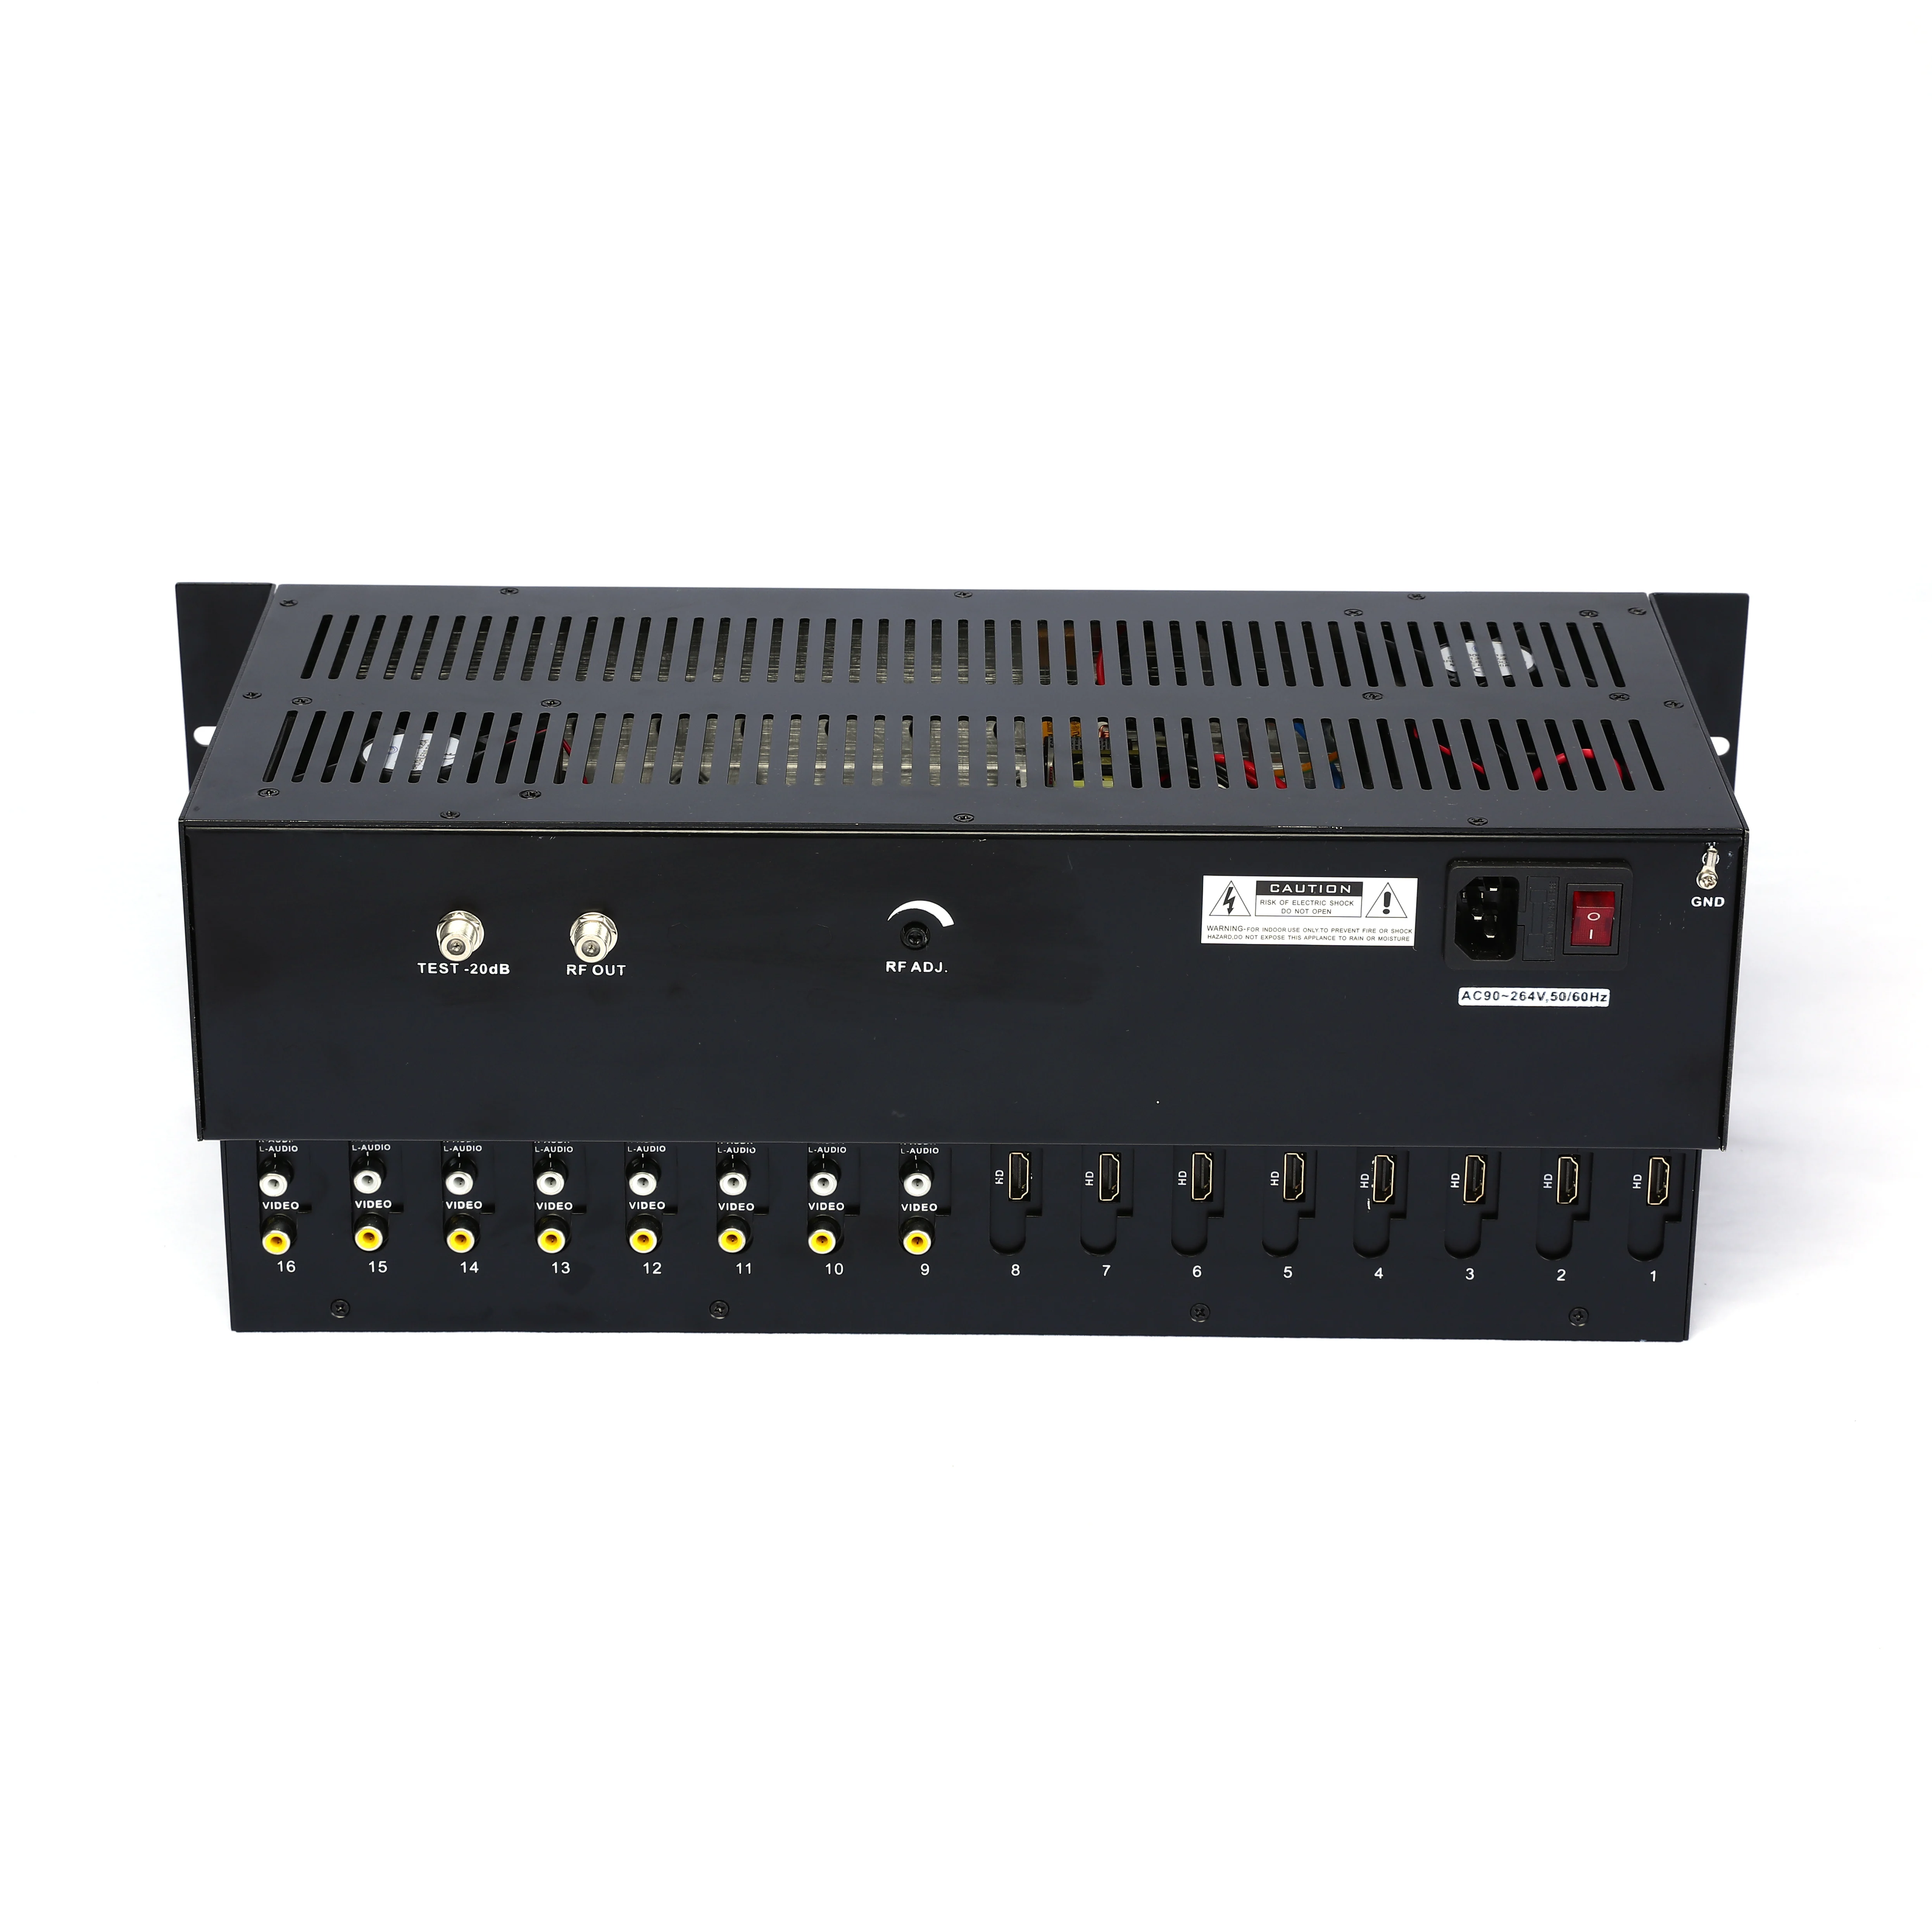 SKD2718 ATSC Moduliatorius 16 Kanalų HDMI 1080P Įvesties ATSC J. 83B RF Išėjimo / LAN, WIFI valdymas